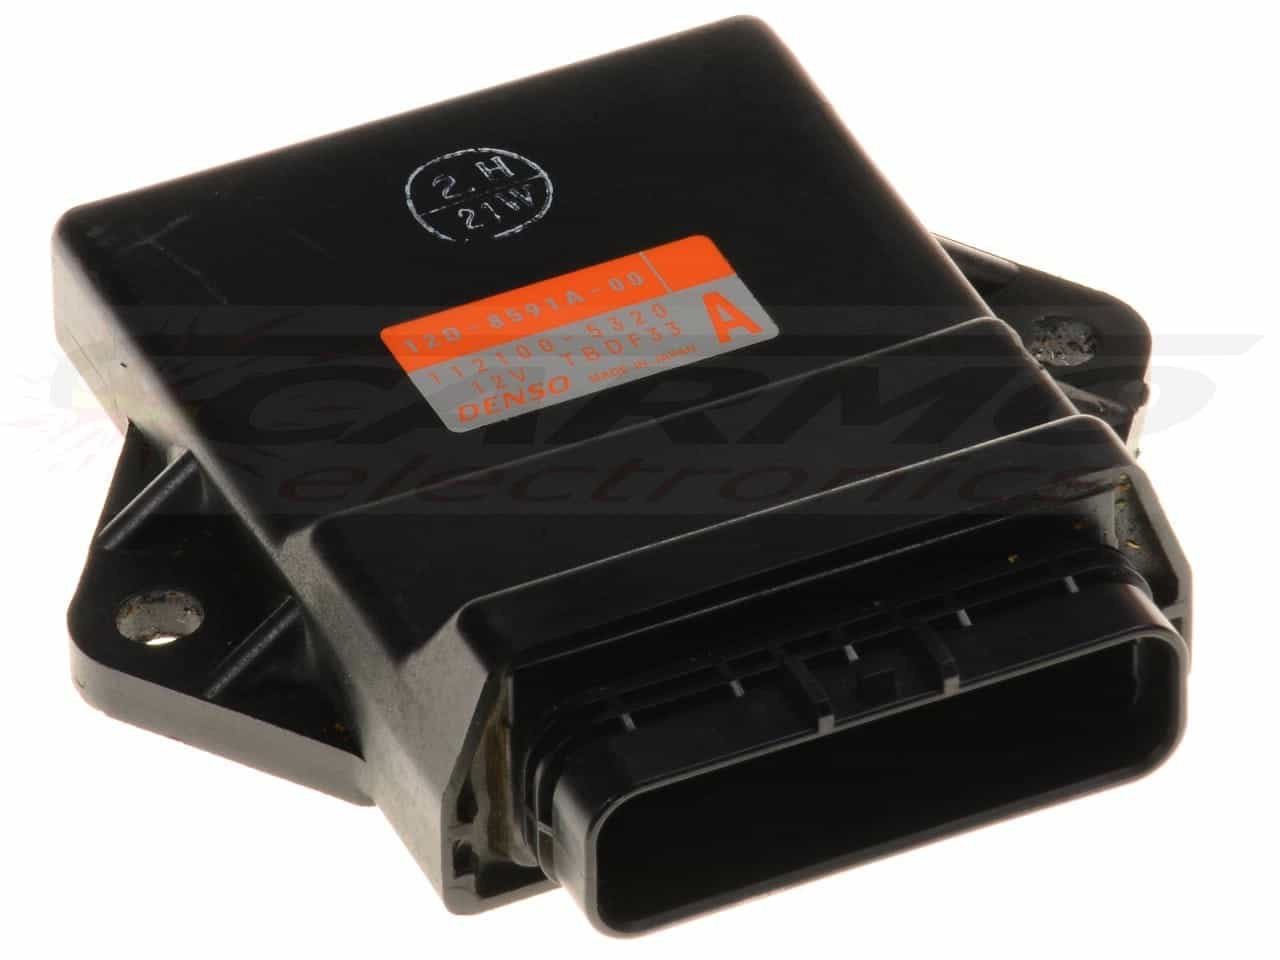 XT660R TCI CDI dispositif de commande boîte noire (12D-8591A-00, 112100-5320)